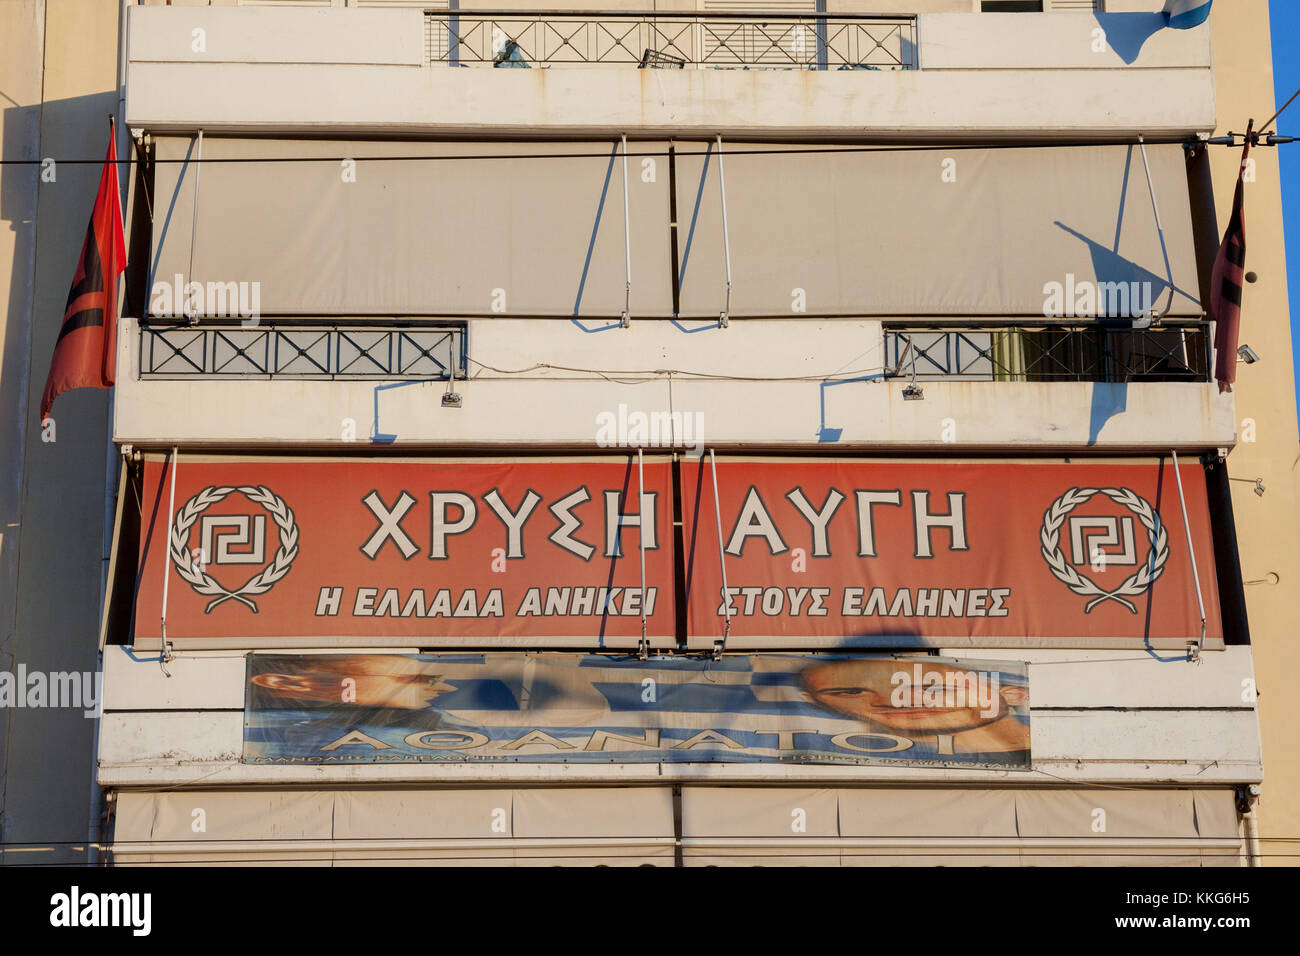 Athen, Griechenland - November 4, 2017: lokale Sitz der griechischen Rechtsextremen Partei Golden Dawn (Chrysi Avgi), für seine ultranationalistischen Positionen bekannt Stockfoto